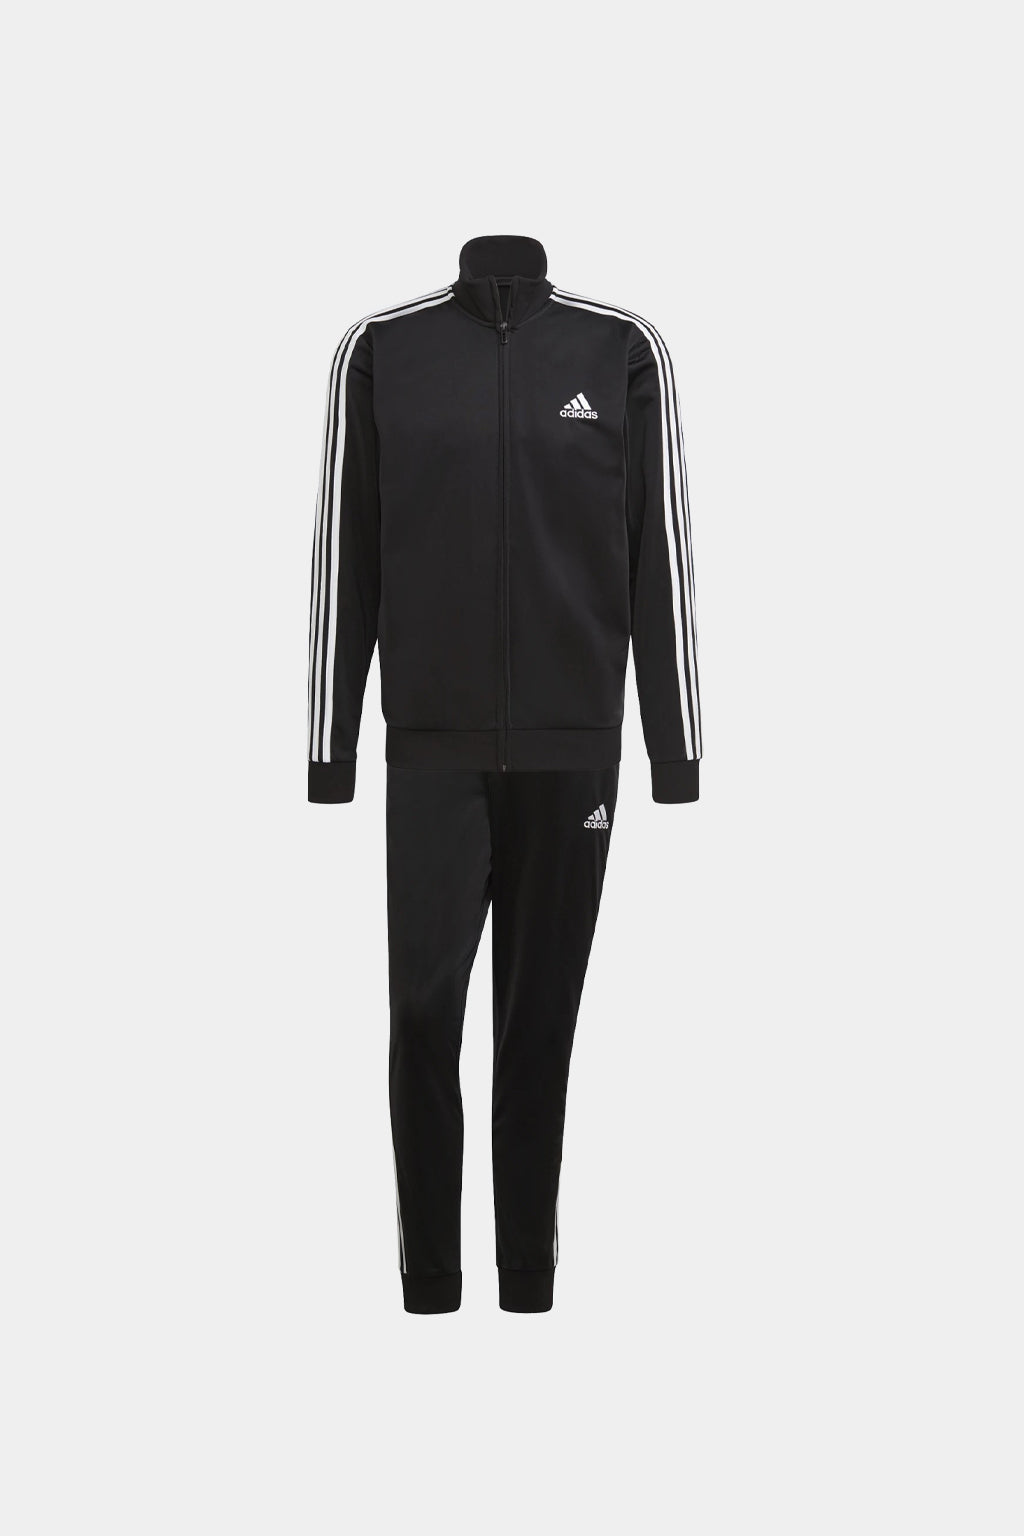 Adidas - Essentials 3-stripes Track Suit